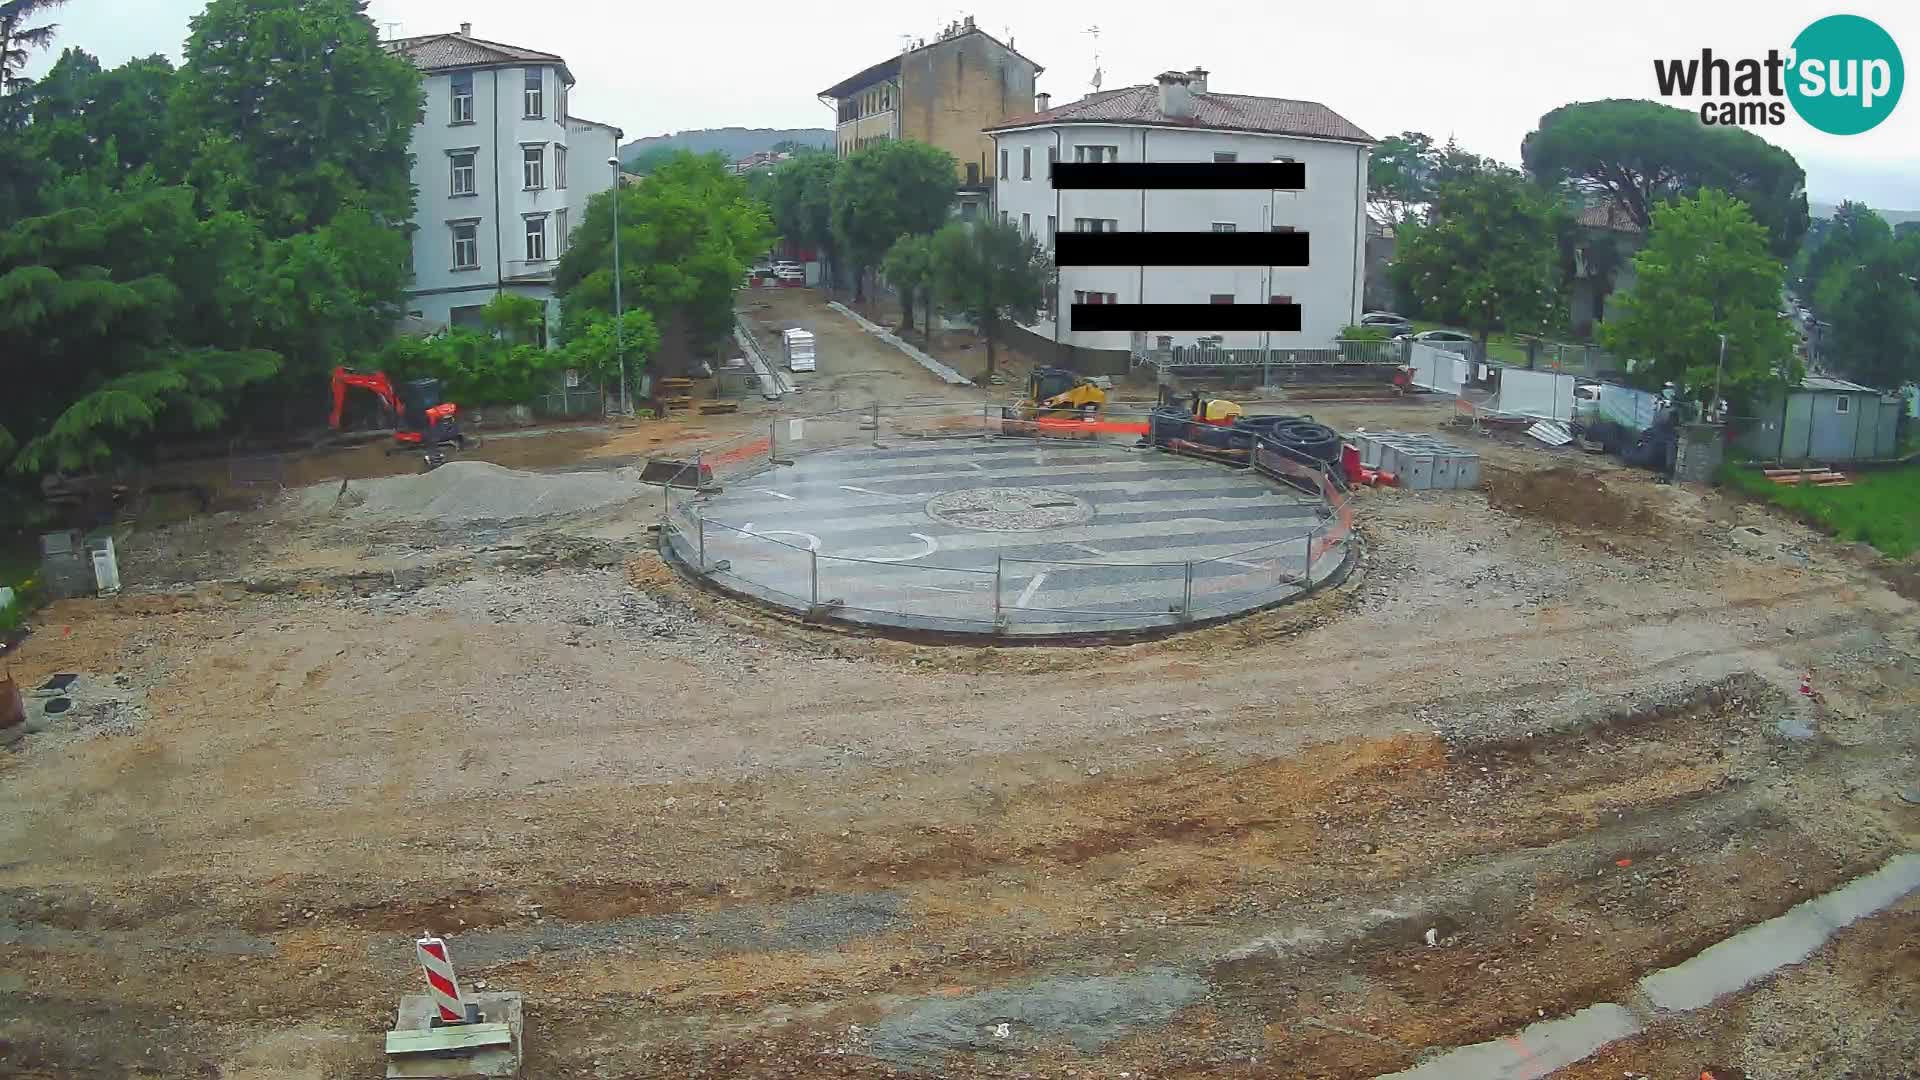 Piazza della Transalpina Gorizia / Piazza Europa Nova Gorica